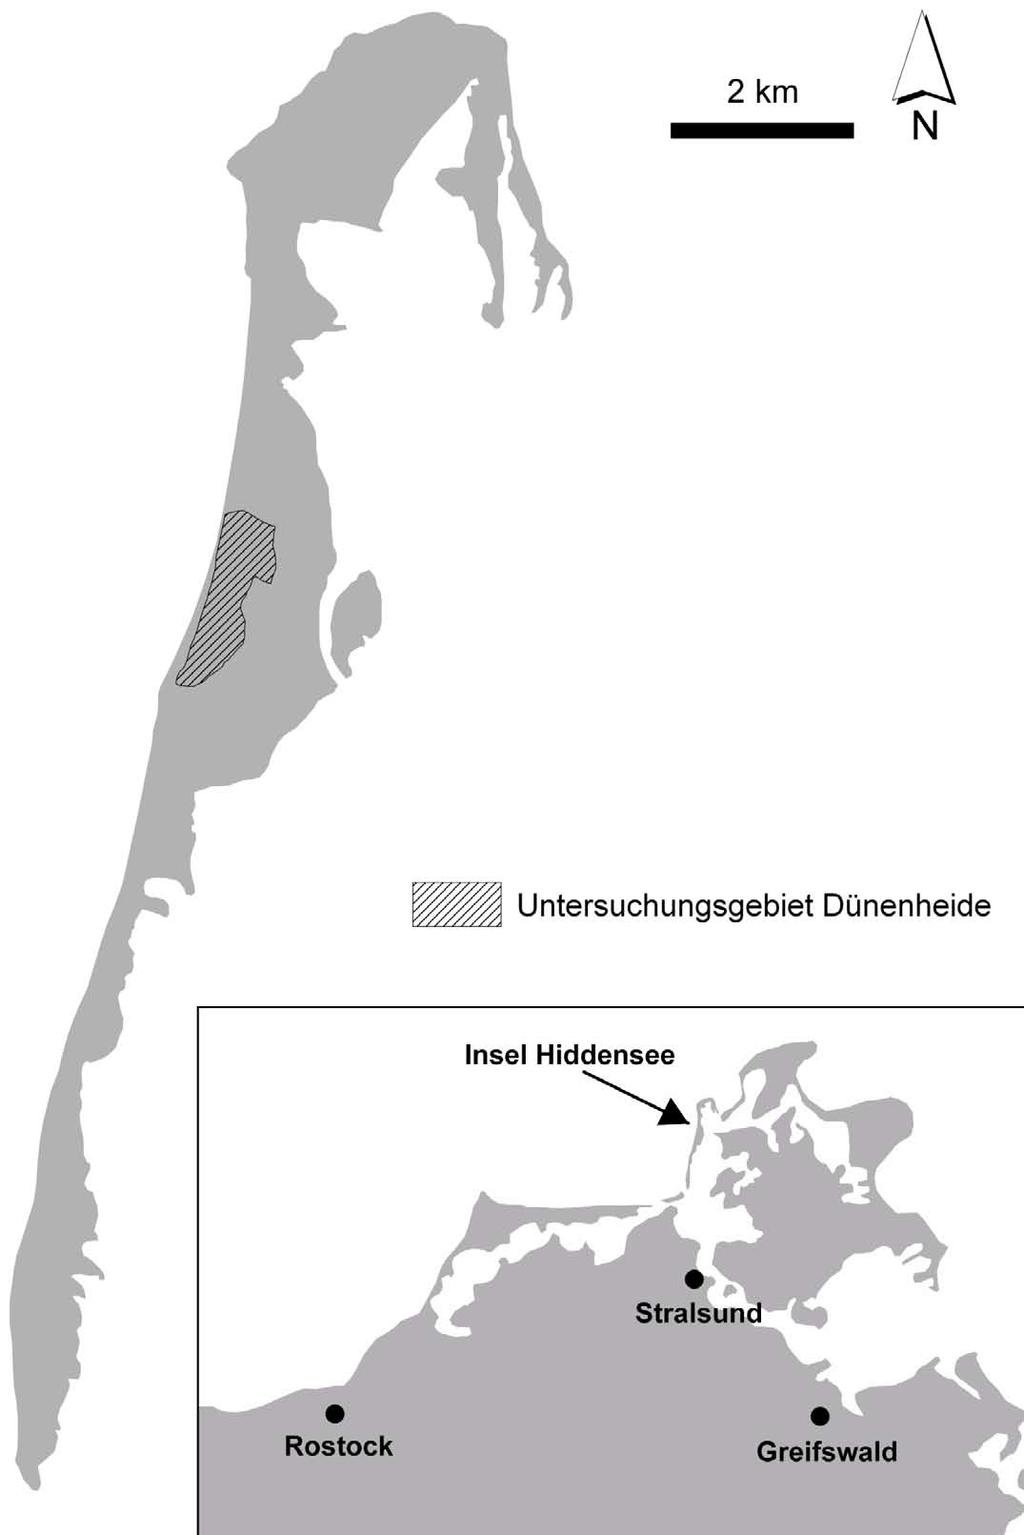 8 S. Buchholz & J. Schirmel Abb. 1: Lage der Insel Hiddensee an der deutschen Ostsee (kleine Karte) und des Untersuchungsgebietes Dünenheide (große Karte), 54 32'N, 13 50'E, TK 1444, 2 m ü. NN. Fig.